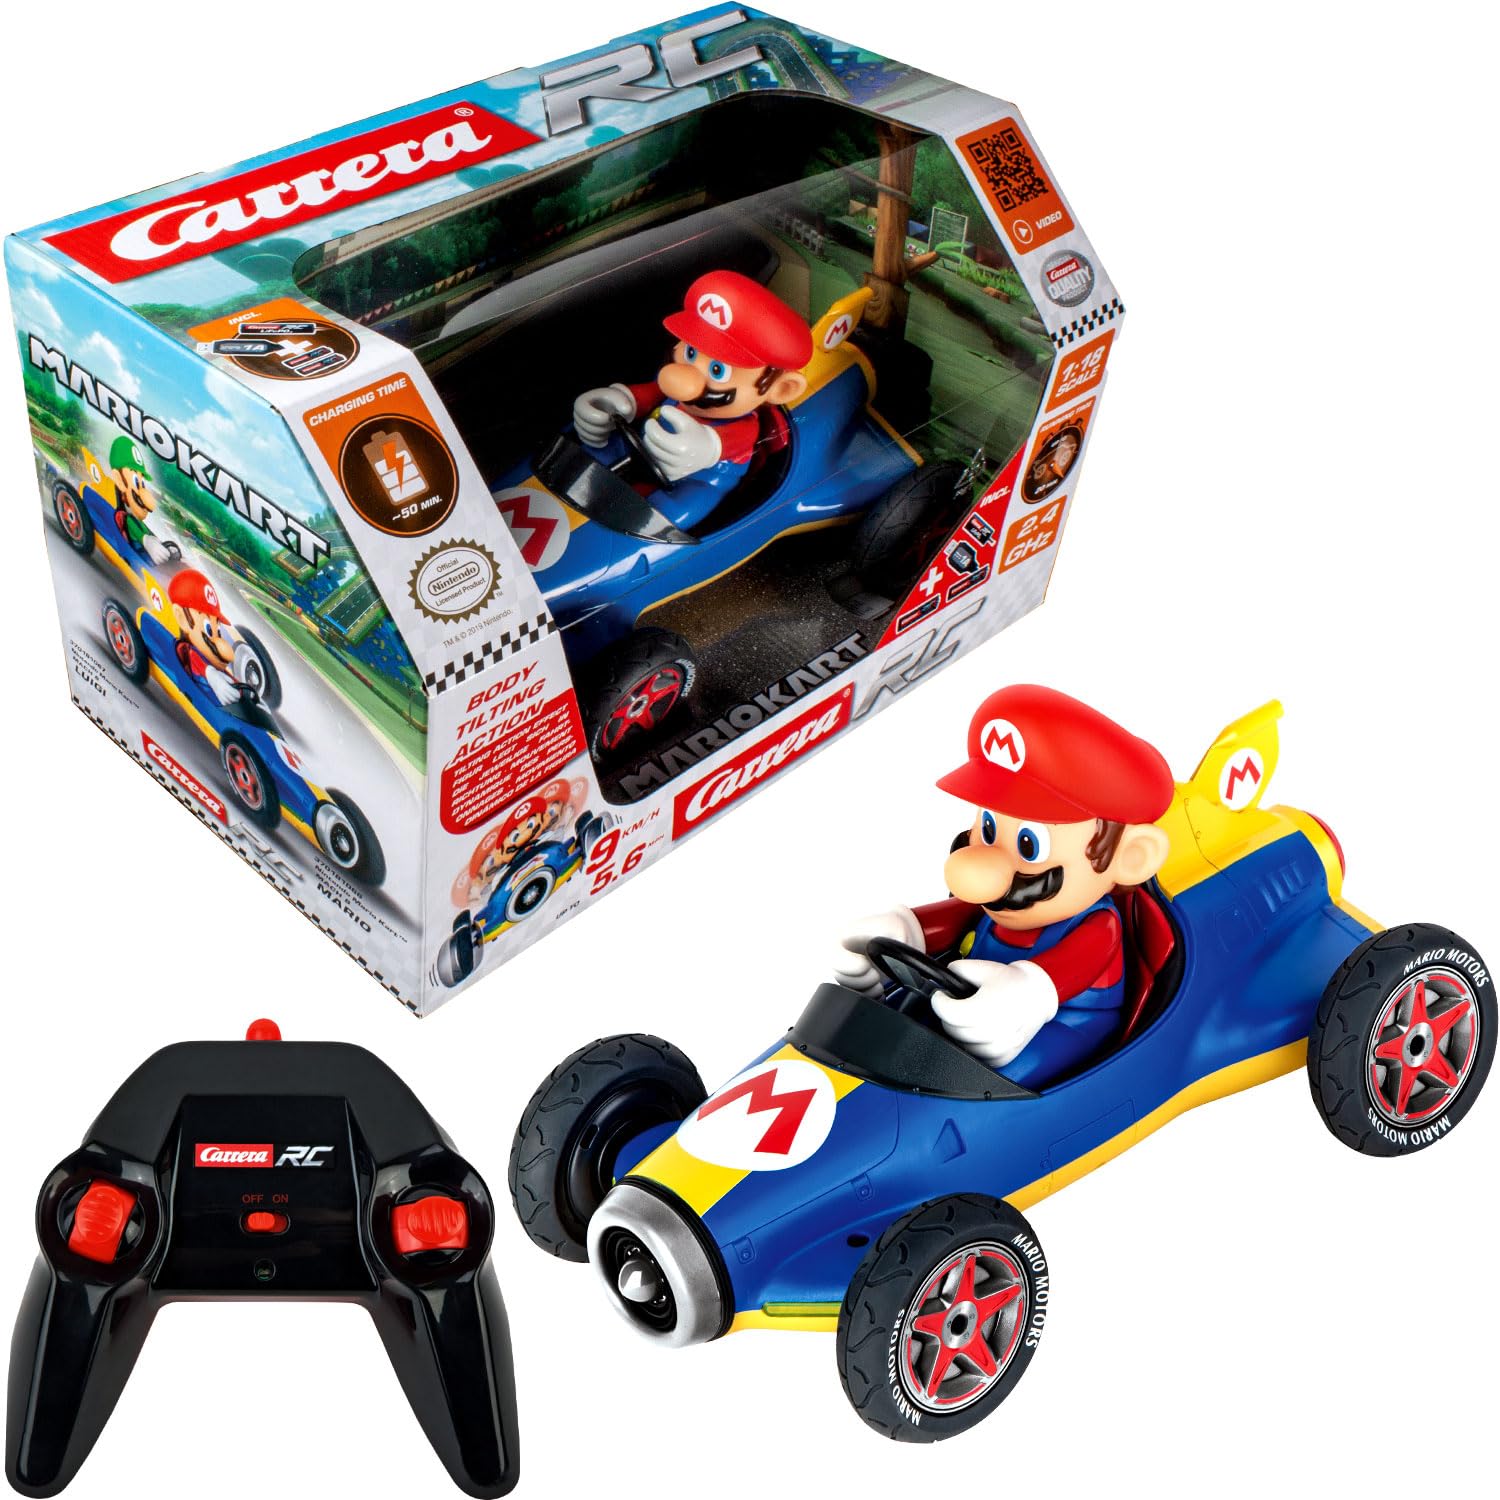 Carrera Mario Kart™ Mach 8 Mario Ferngesteuertes Auto | RC Auto | Actionreiche Rennen | 1:18 Maßstab | Bis zu 9 km/h & 20 Min Fahrzeit | Nintendo-Lizenz | Duelliere dich mit Freunden | Ab 6 Jahren